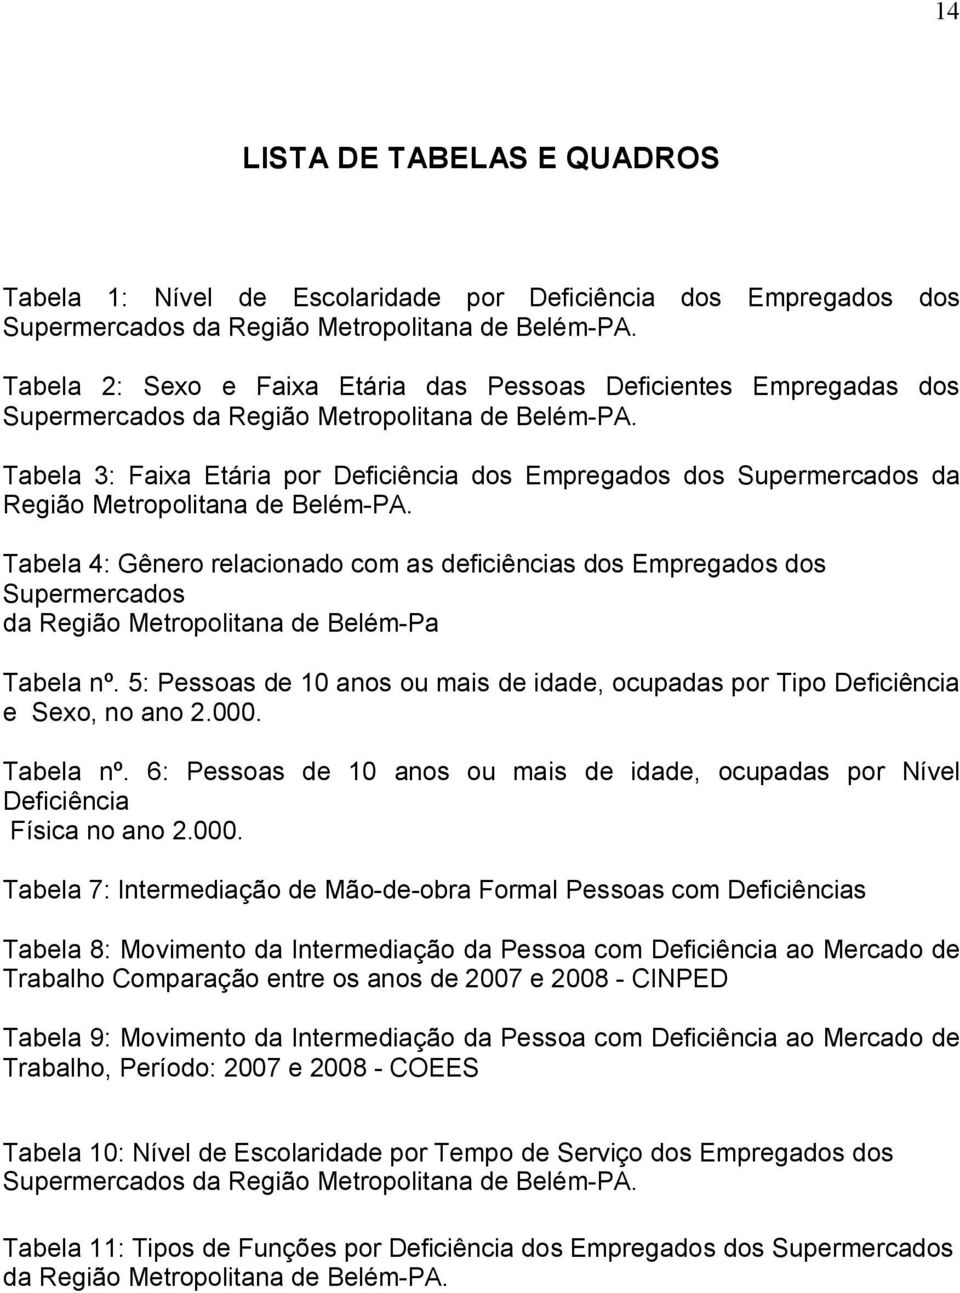 Tabela 3: Faixa Etária por Deficiência dos Empregados dos Supermercados da Região Metropolitana de Belém-PA.